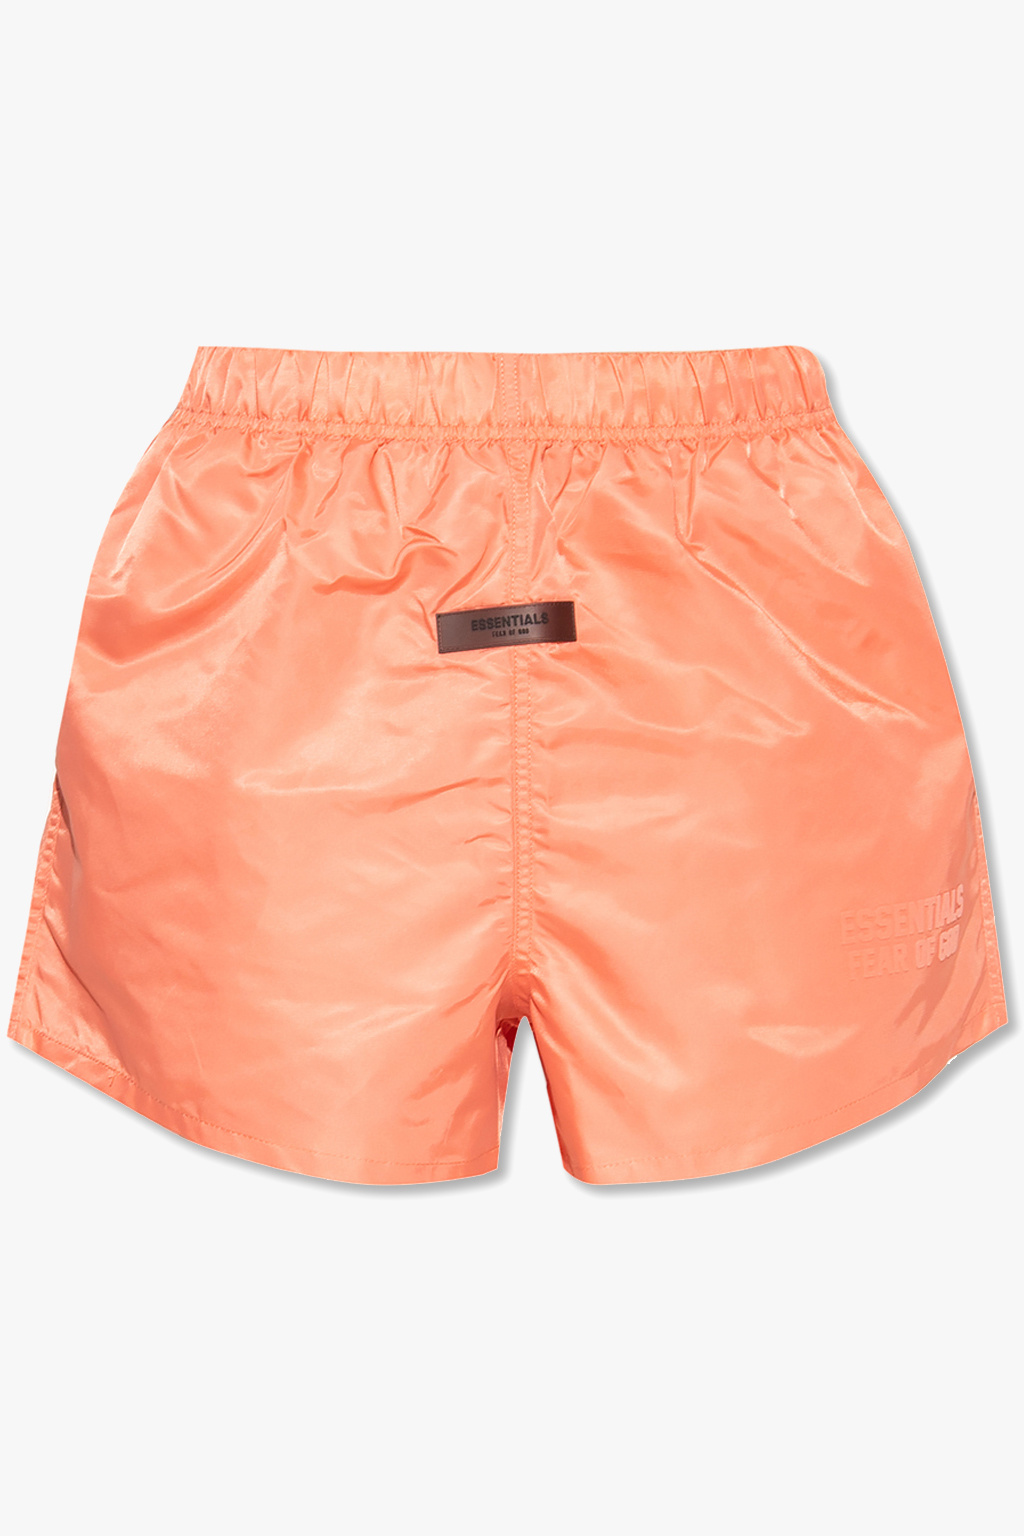 Orange Shorts with logo Fear Of God Essentials - Vitkac Canada